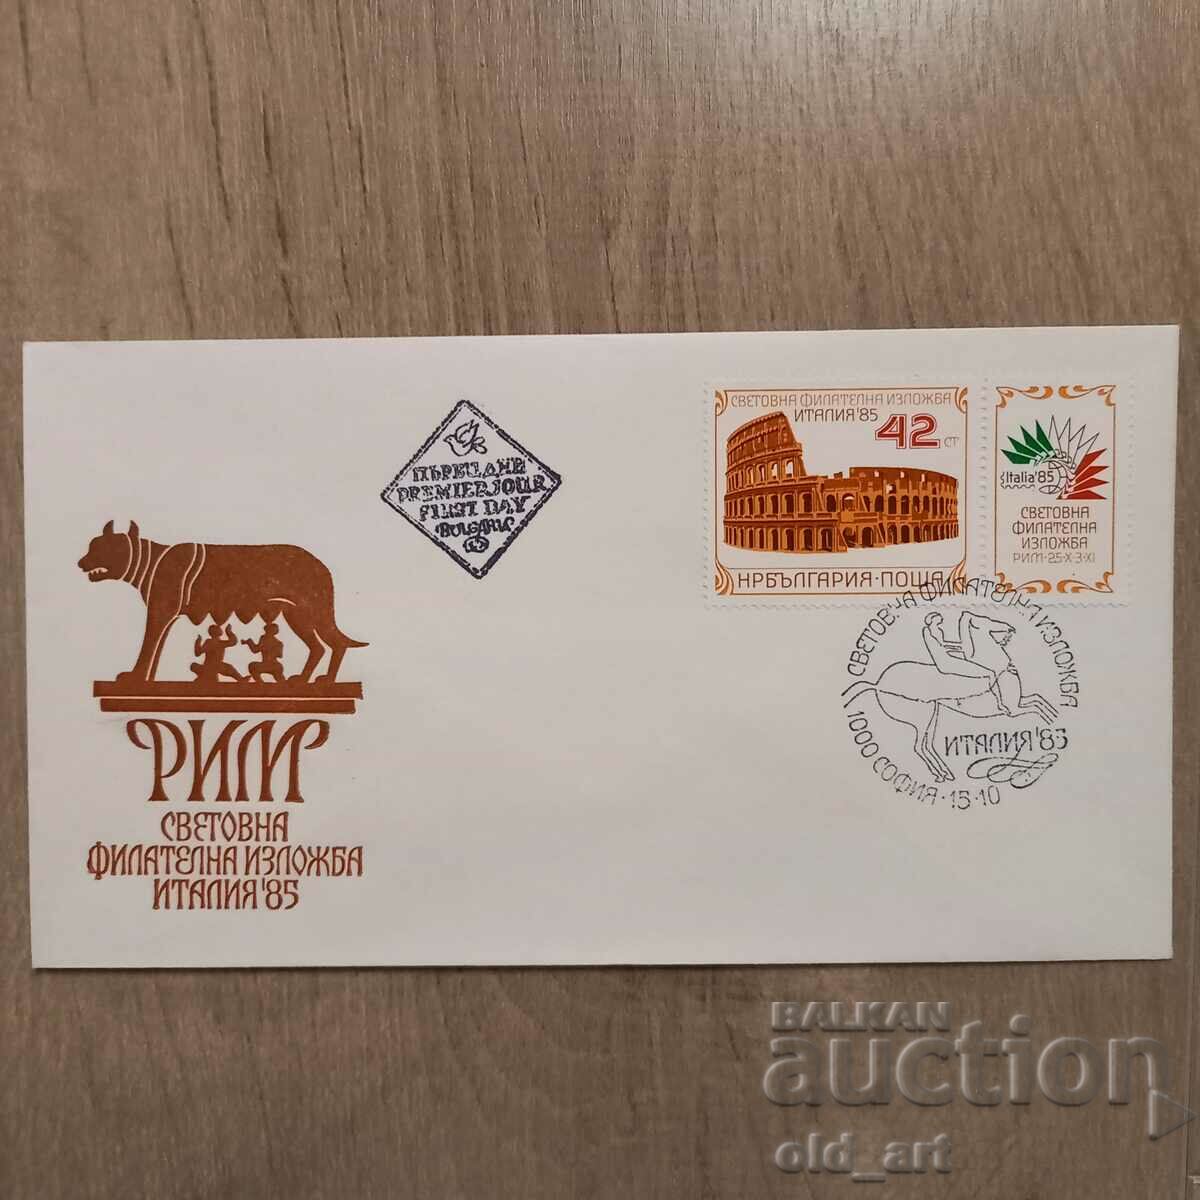 Mailing envelope - World Philatelic Exhibition Italy 85